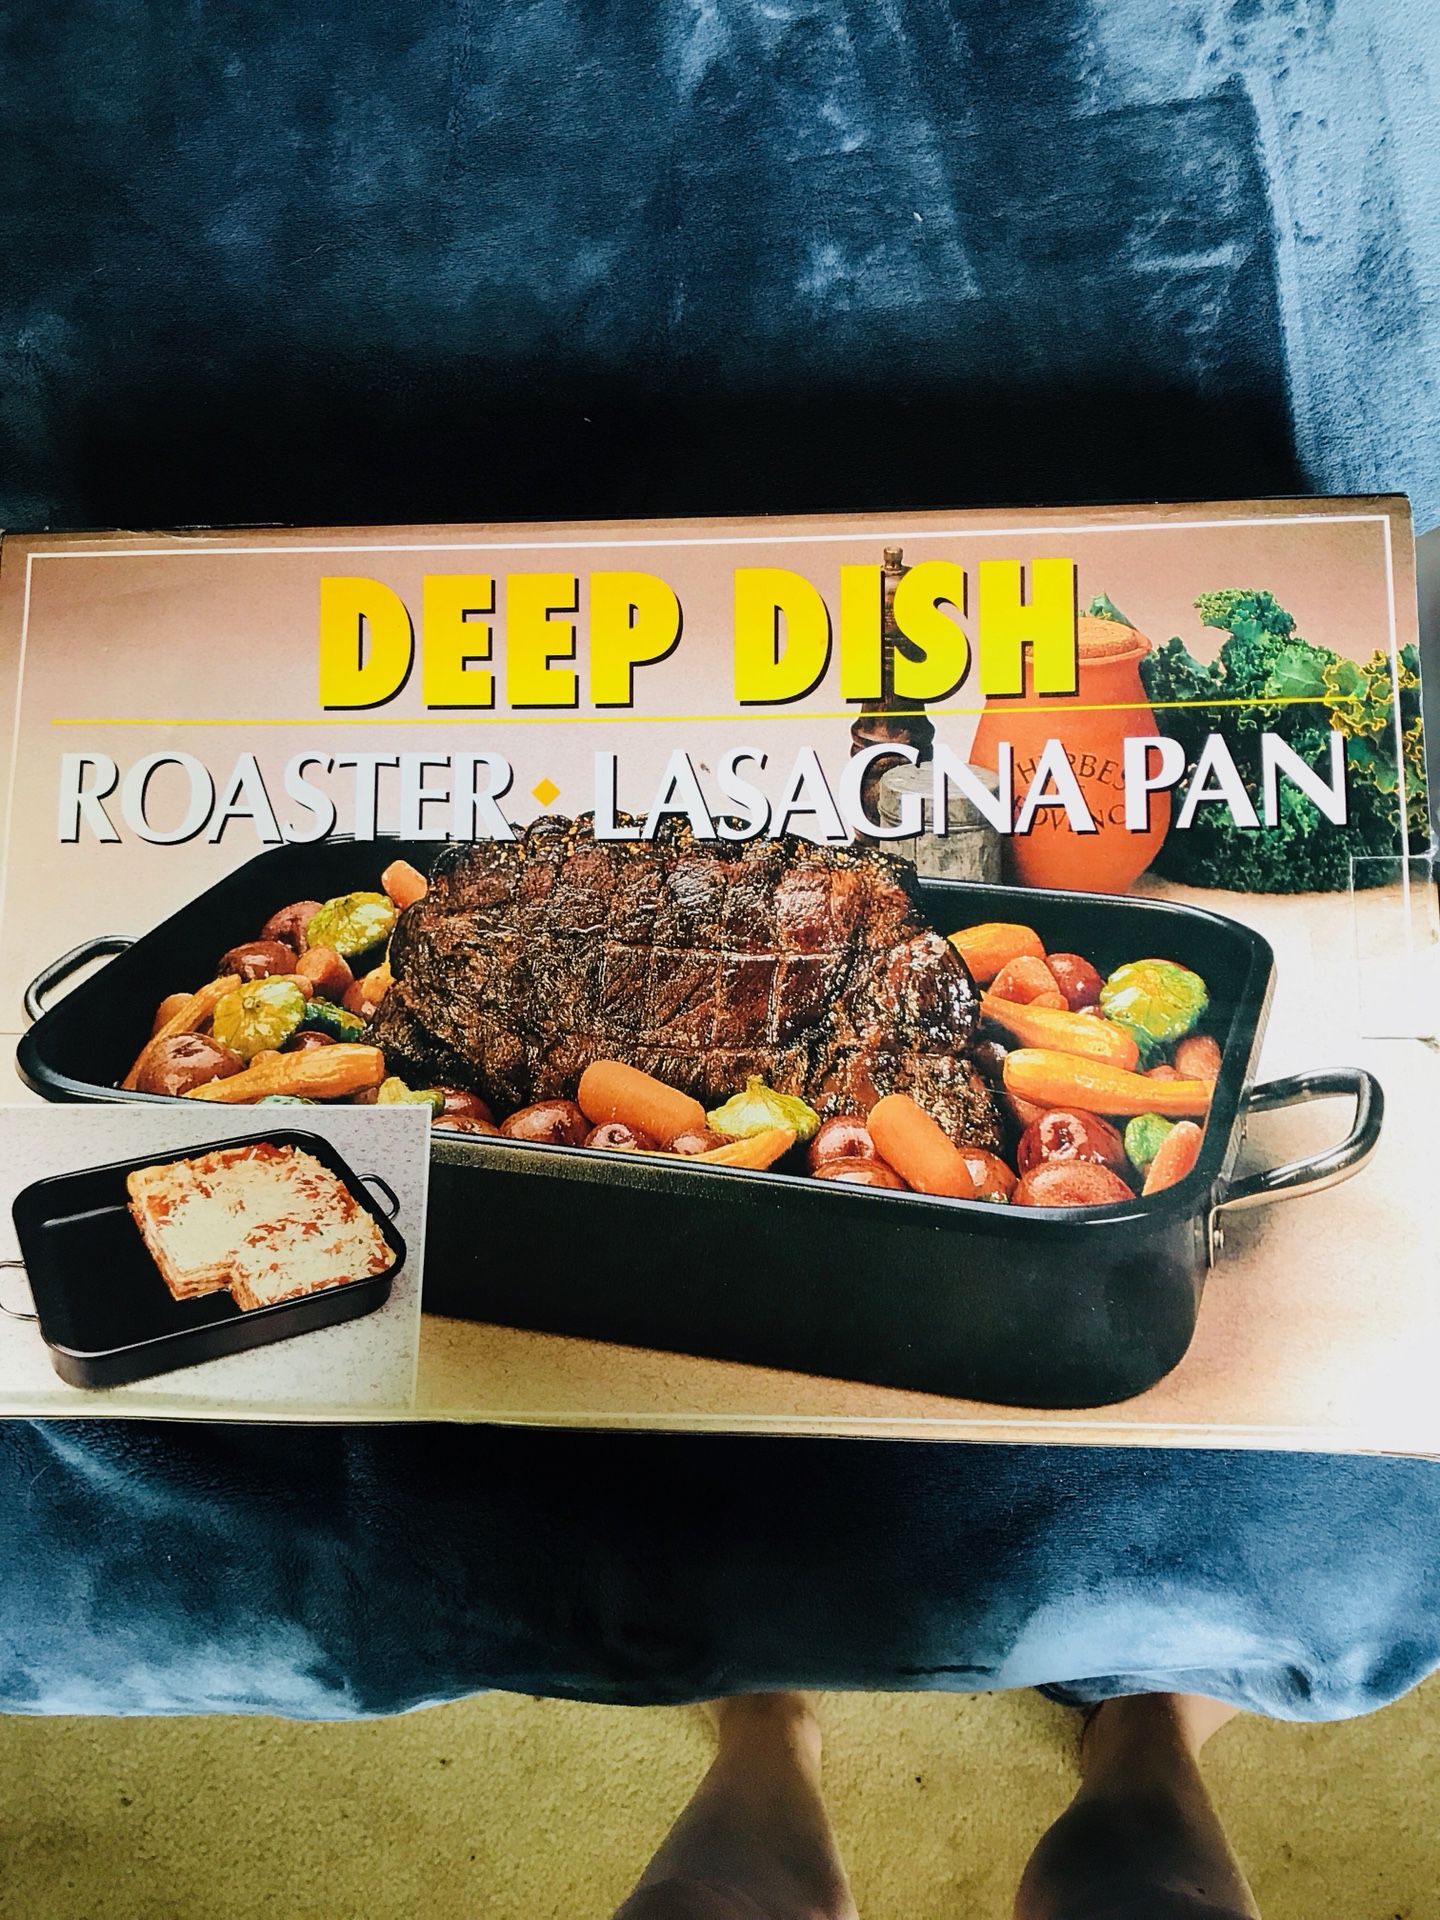 Roaster pan